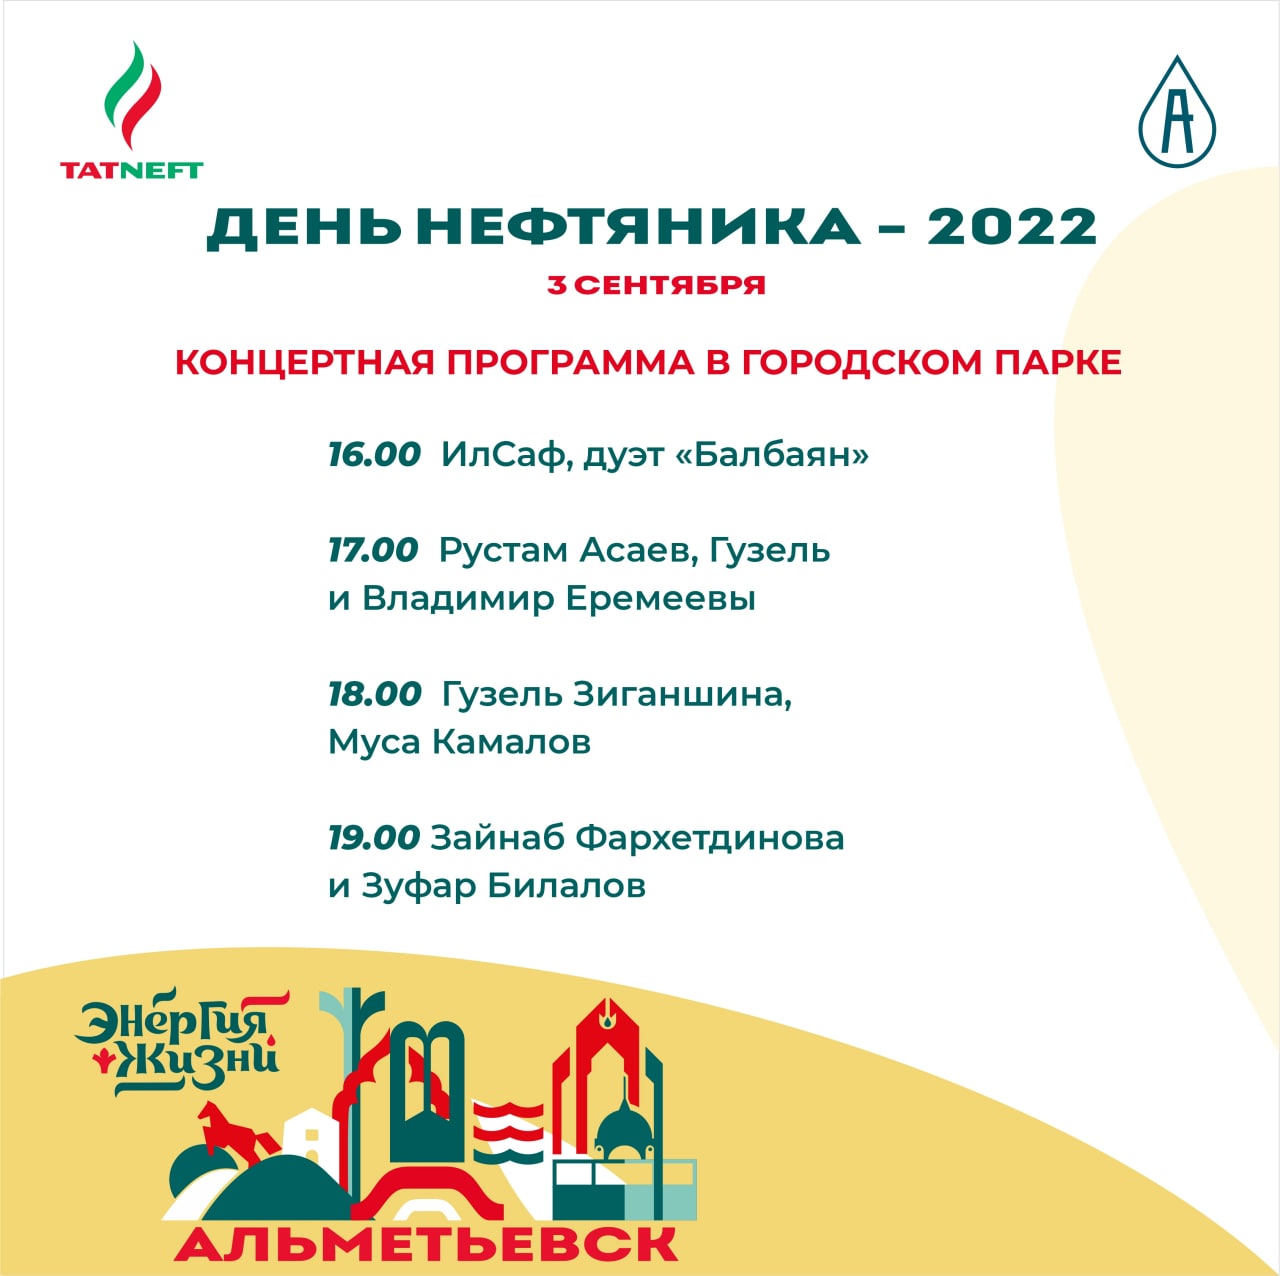 Праздничный парад, концерт Лепса и Басты, салют: куда пойти на День нефтяника в Альметьевске